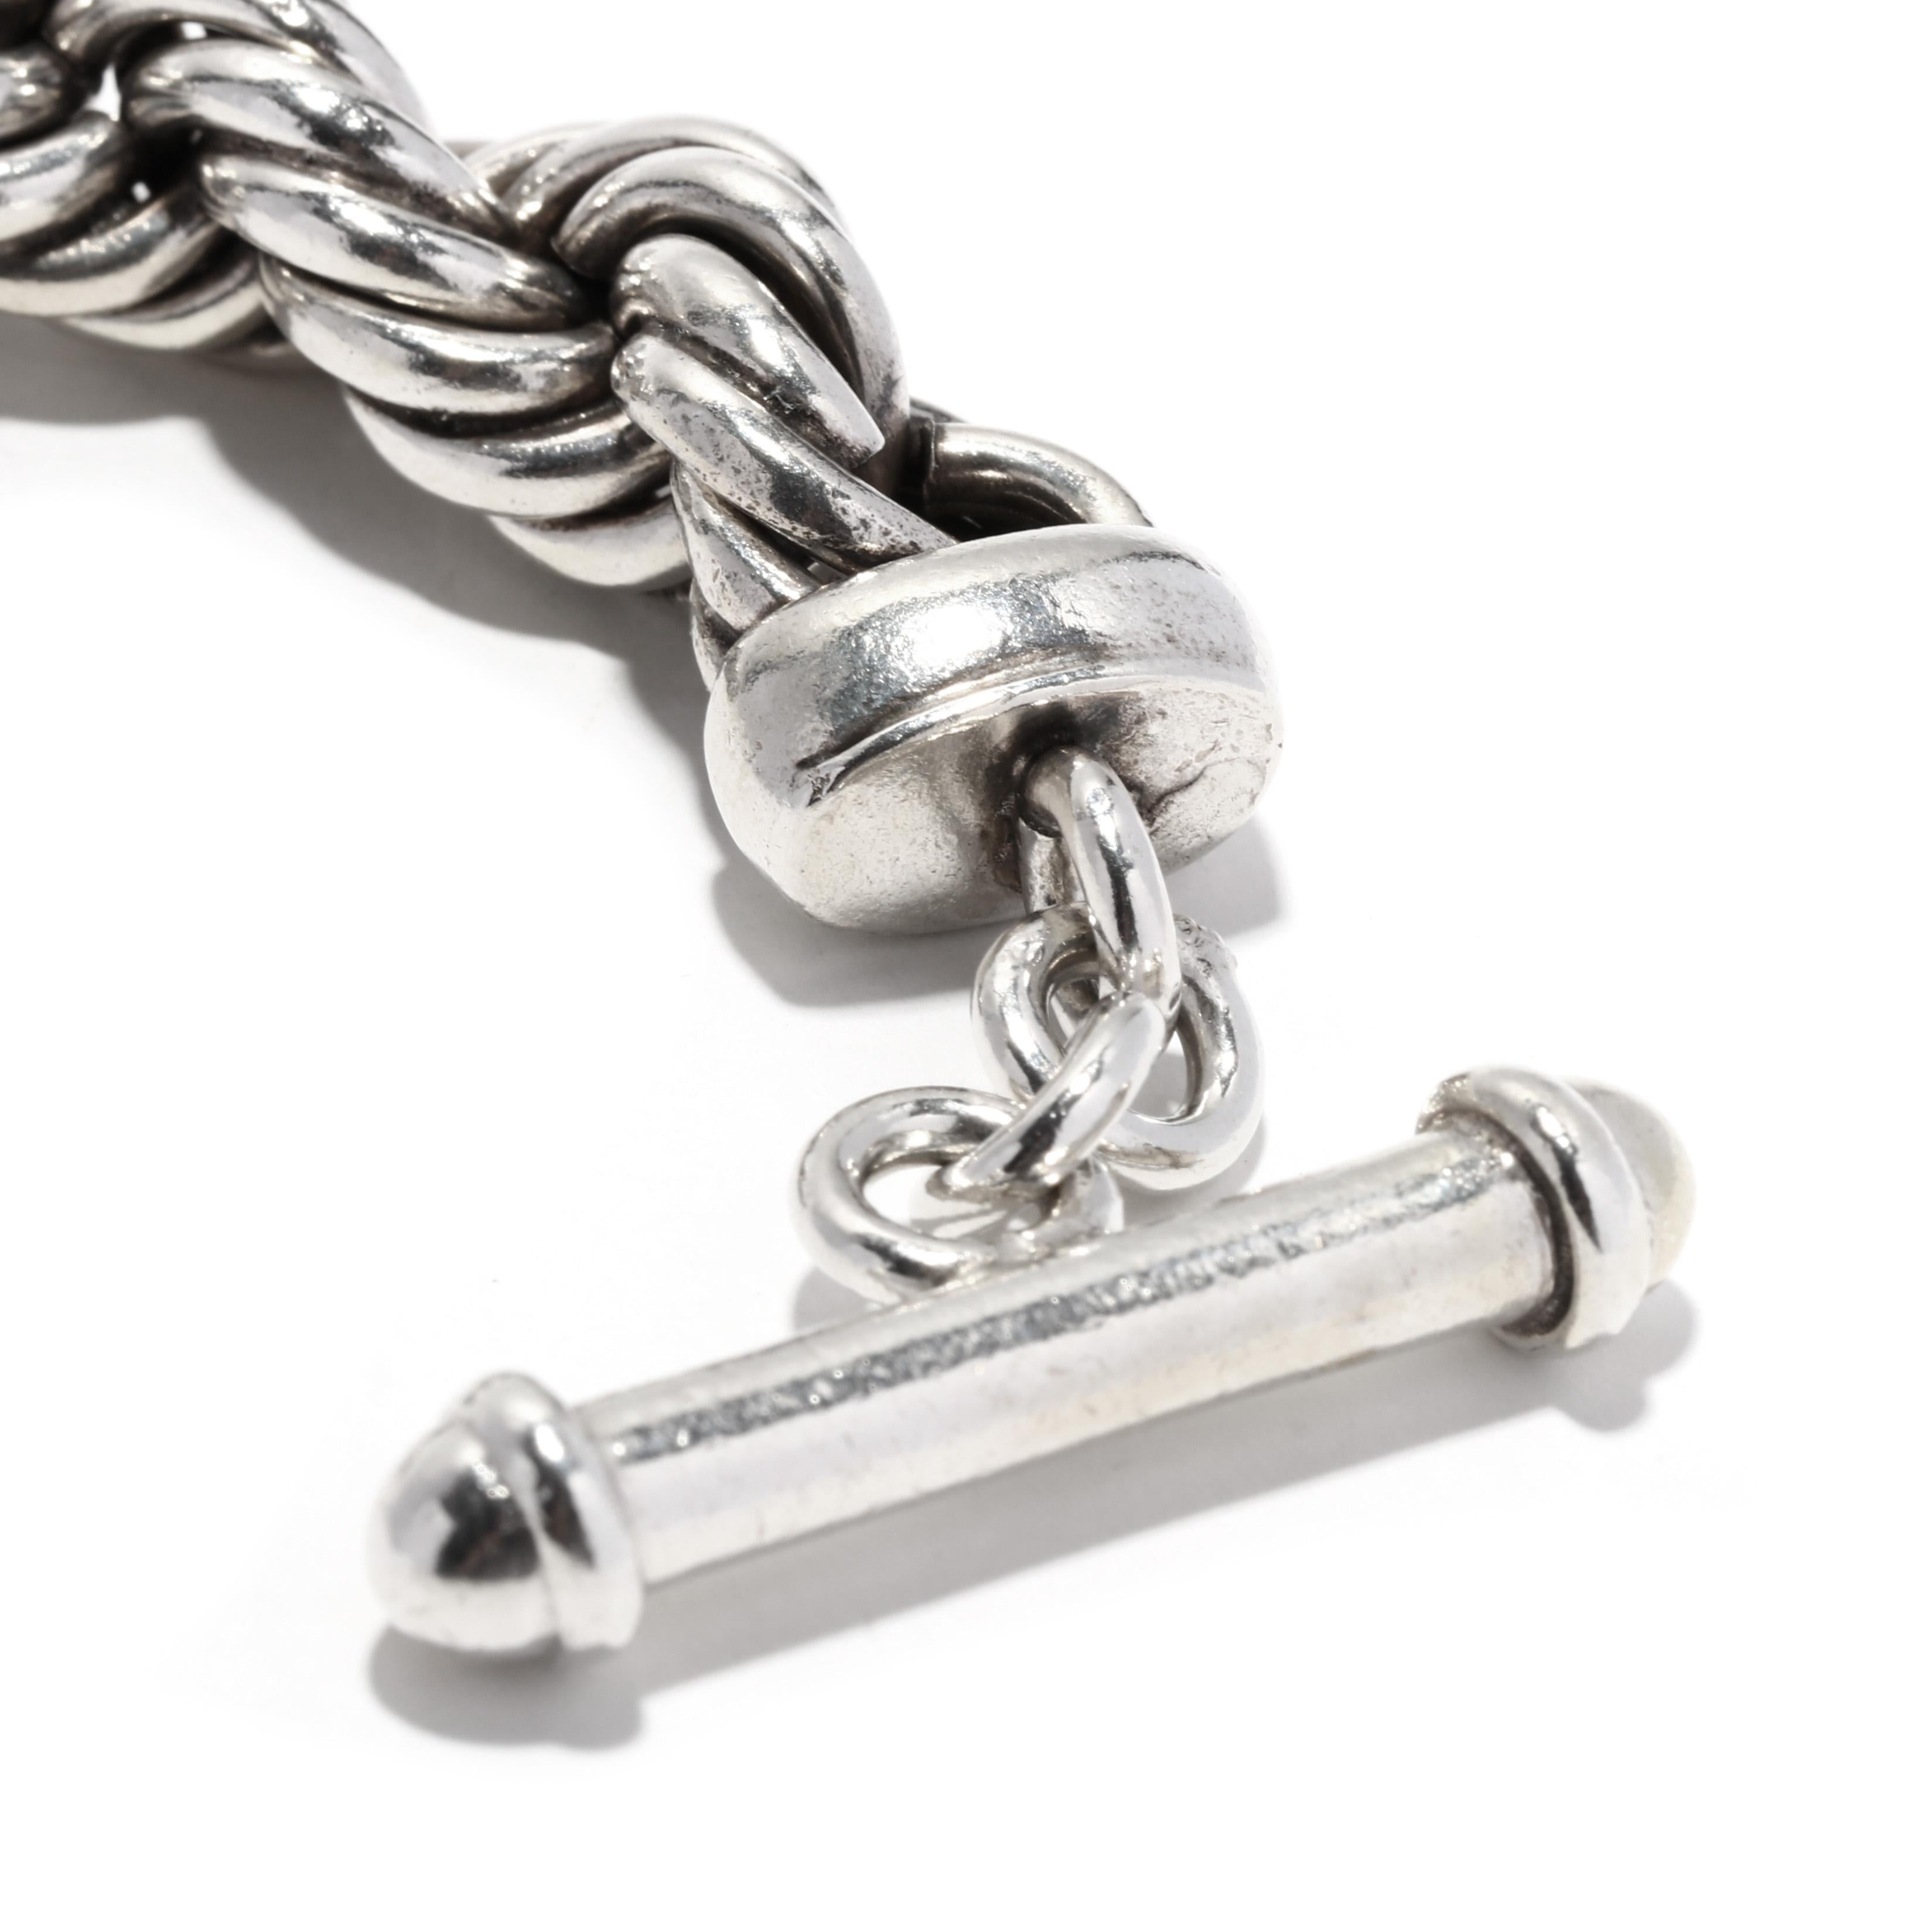 Ce magnifique bracelet à boucle torsadée en corde est l'accessoire parfait pour compléter n'importe quel look. Fabriqué en argent sterling, ce bracelet à chaîne de 8,5 pouces est doté d'une fermeture à genouillère unique en forme de corde. Son